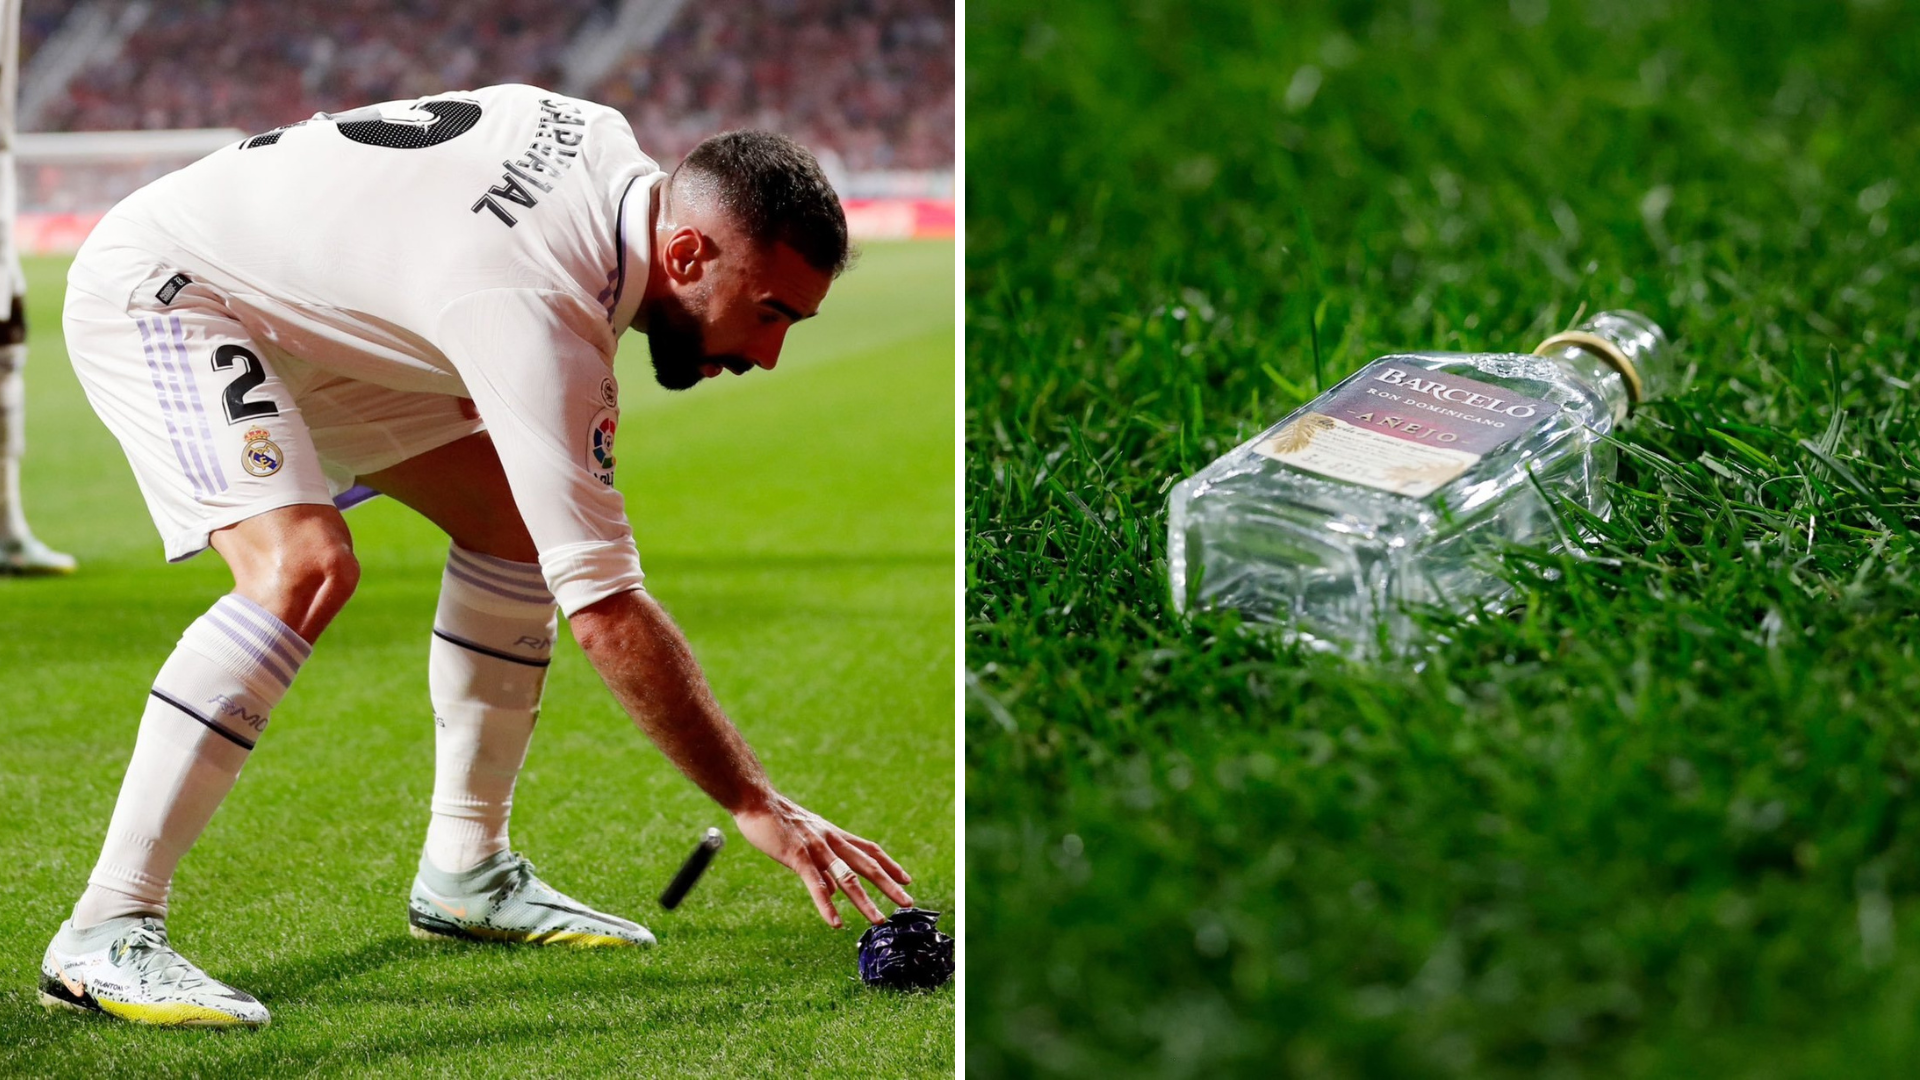 Tifozët e Atleticos nuk kanë kufij – Gjuajnë me shishe rakie lojtarët e Realit pas golit